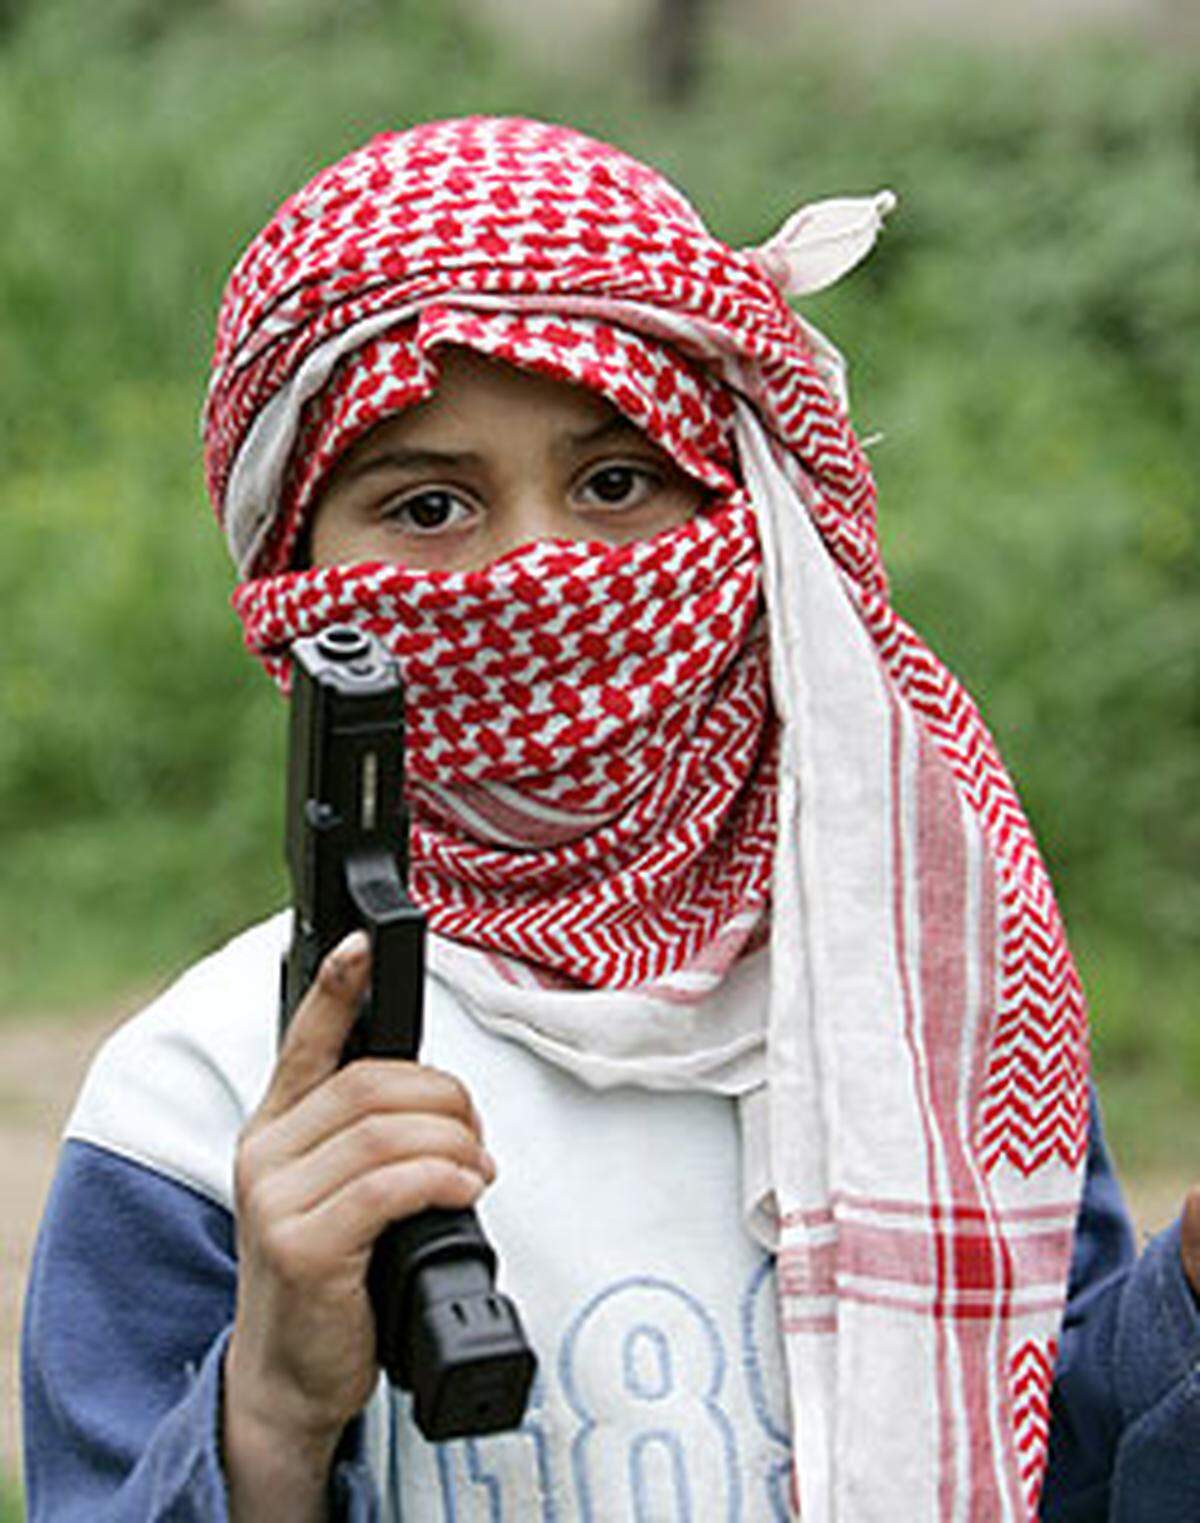 Das Zusatzprotokoll ist bisher von 122 Staaten unterzeichnet worden; 111 haben es ratifiziert, darunter auch Österreich.Ein palästinensisches Kind in einem Trainingscamp der Fatah al-Islam in Nahr al-Bared, 2007